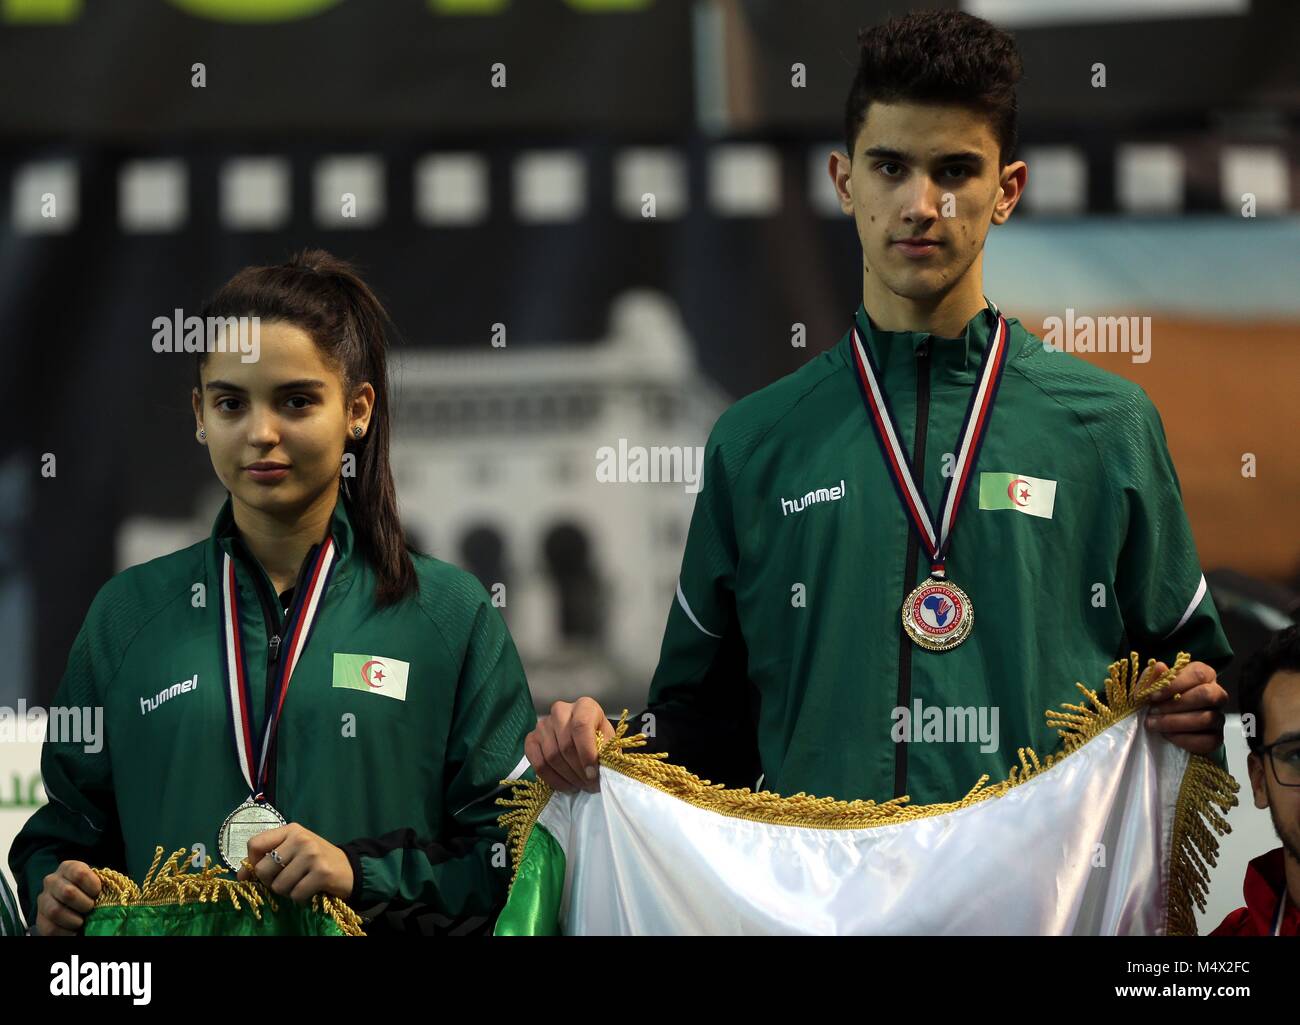 Alger. Feb 19, 2018. Linda Mazri(L) et Koceila Mammeri de l'Algérie célébrer au cours de la cérémonie après avoir remporté la finale du Championnat d'Afrique de l'Badminton à Alger, Algérie, le 18 février 2018. Source : Xinhua/Alamy Live News Banque D'Images